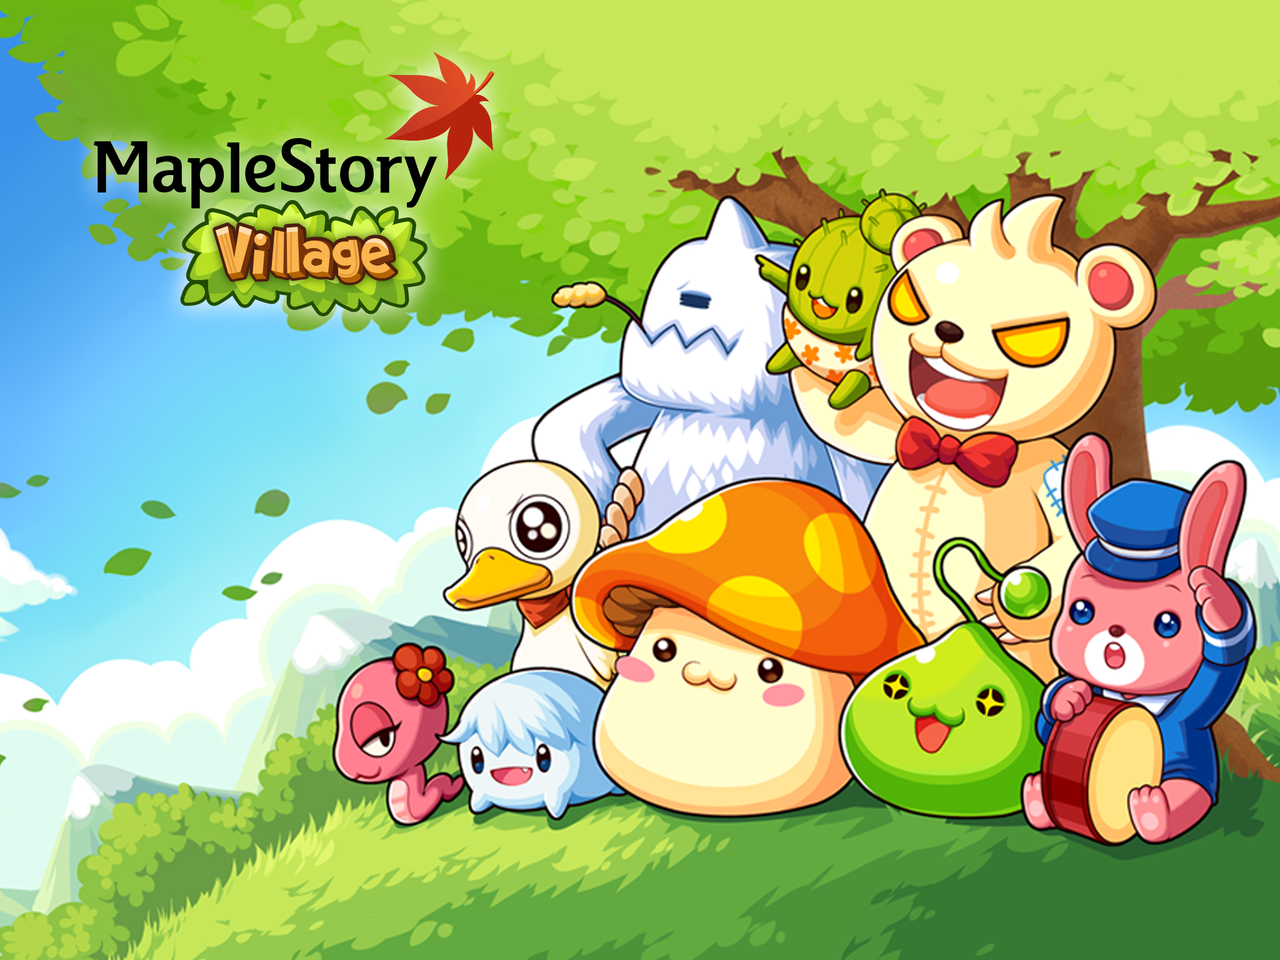 人気オンラインゲーム メイプルストーリー のキャラクターが登場 モンスター育成シミュレーションゲーム Line Maplestory Village Androidアプリ Iphoneアプリ S Max